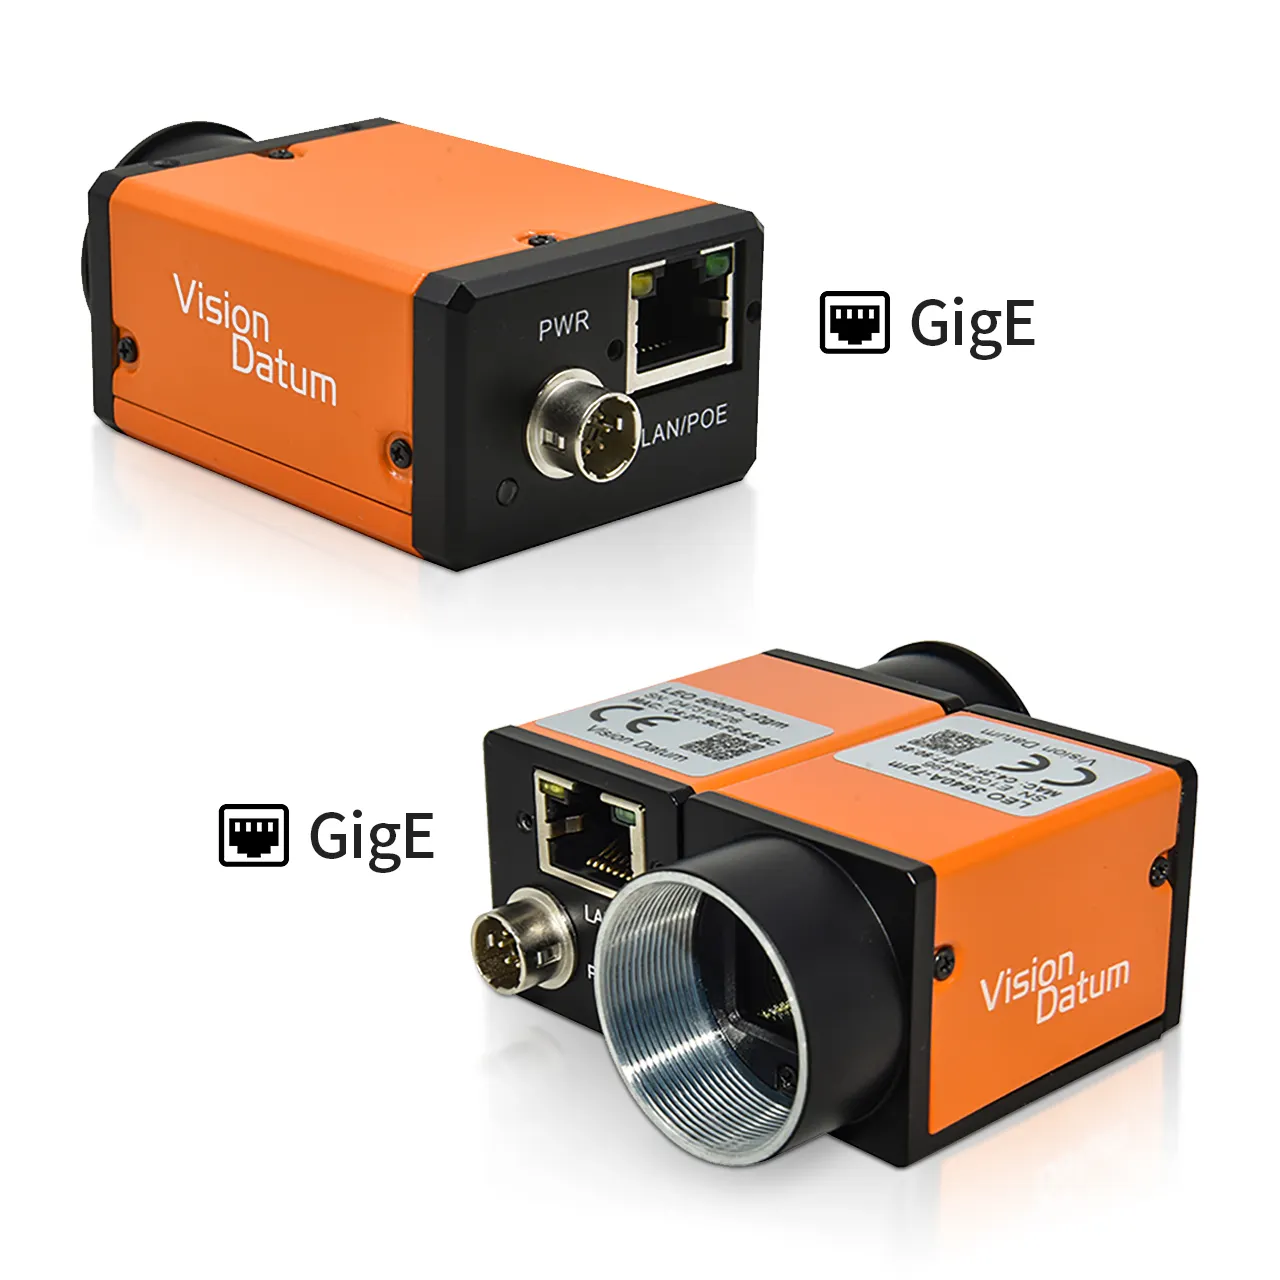 Mars2000-50gm NIR камера высокоскоростной Gige интерфейс 2MP CMOS 50fps быстрая промышленная 3D распознавание лица инфракрасная камера